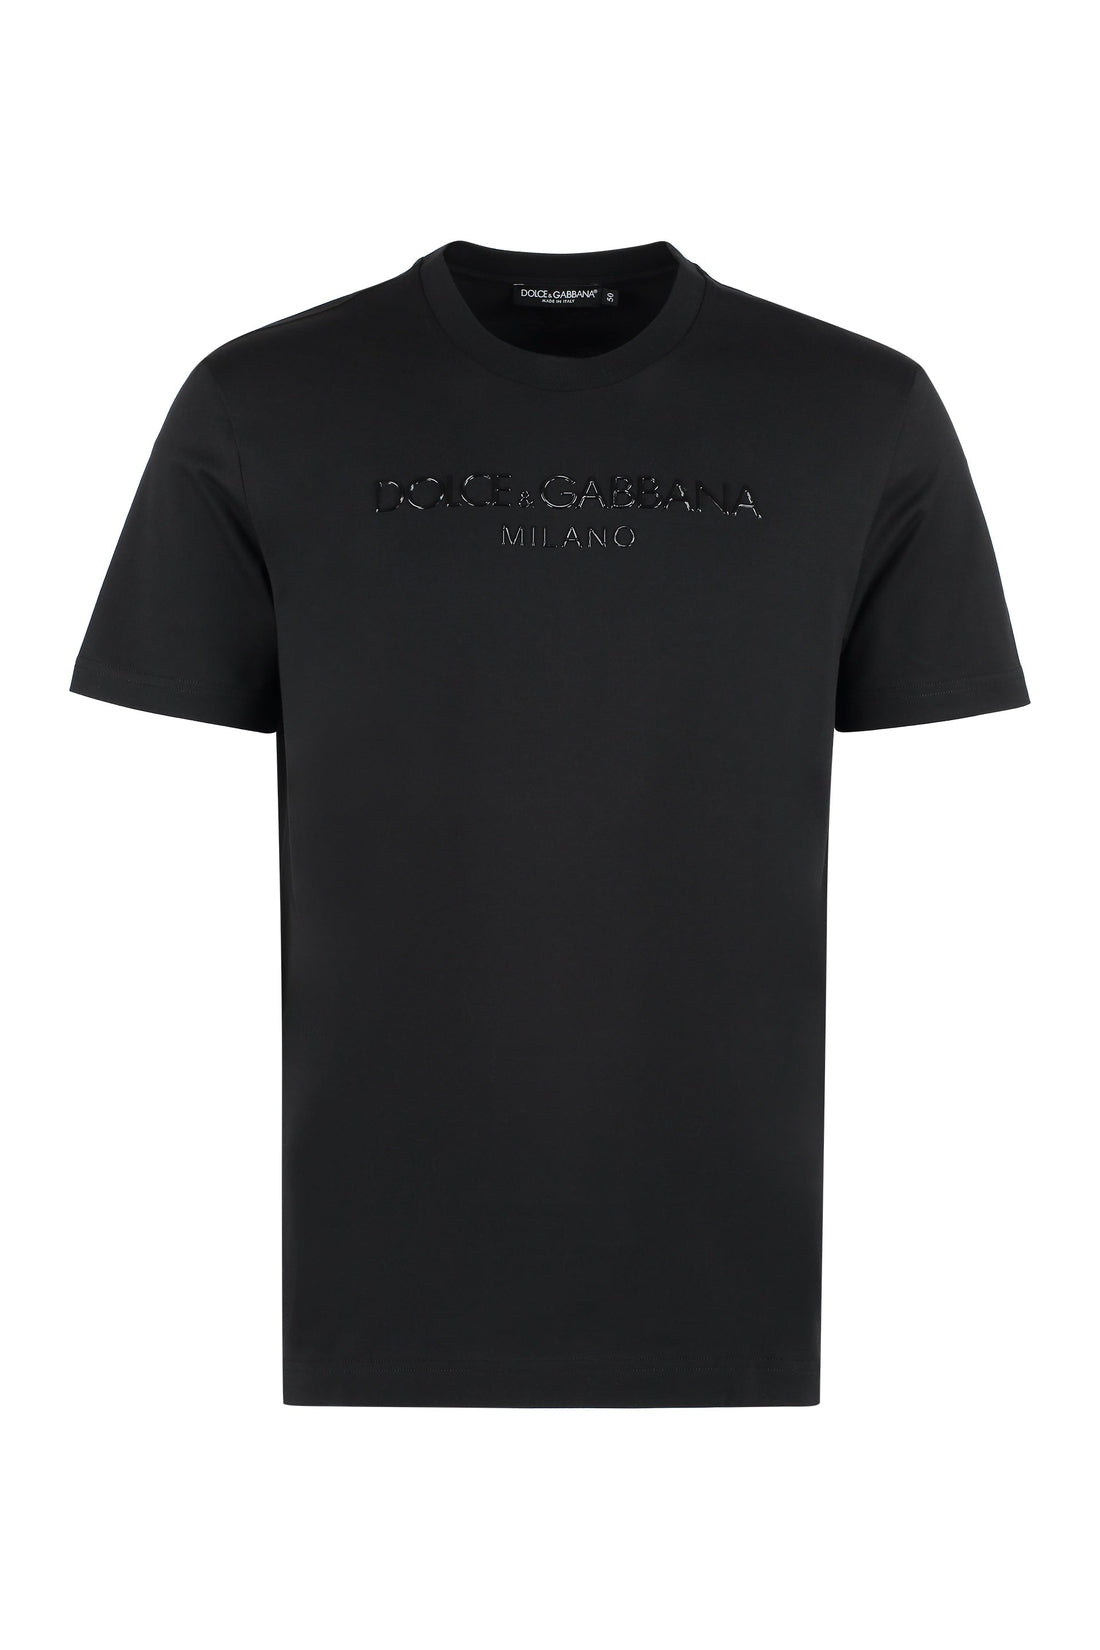 Dolce & Gabbana-OUTLET-SALE-Logo cotton t-shirt-ARCHIVIST